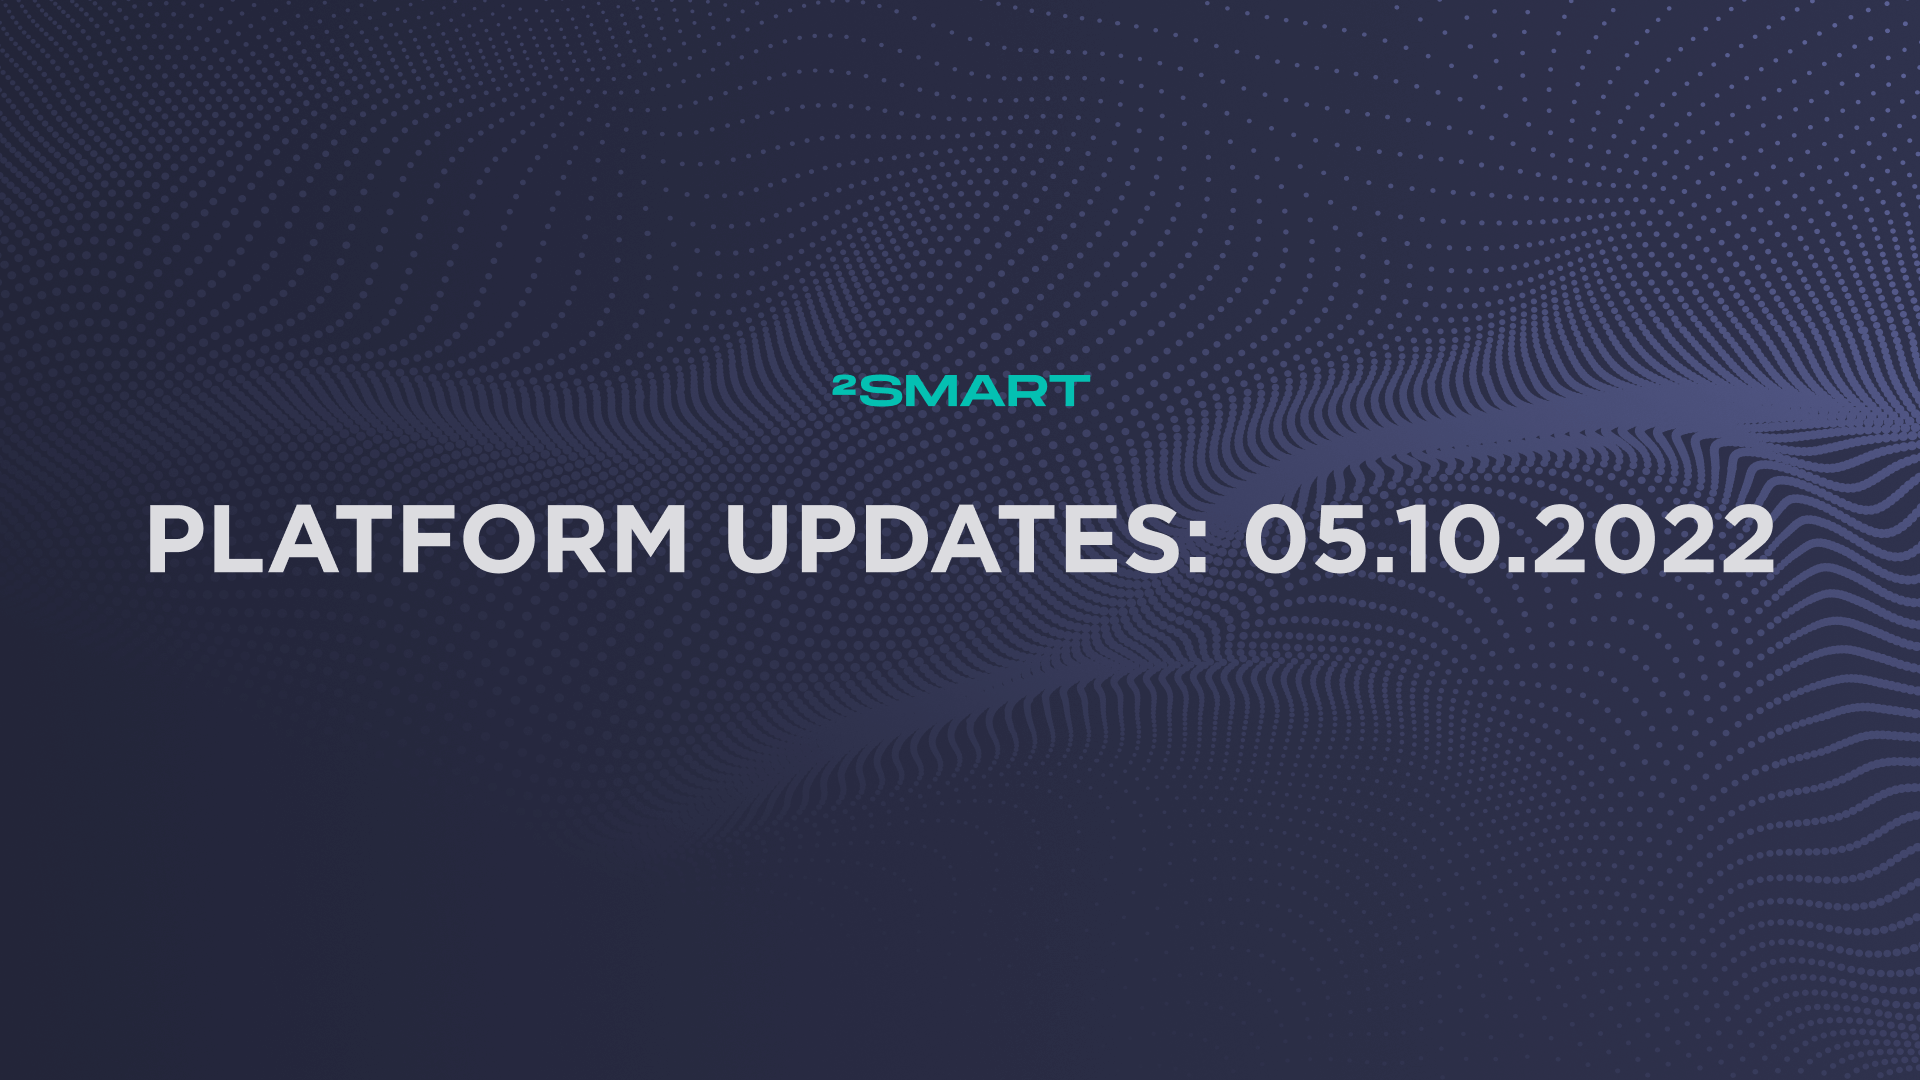 Platform updates: 05.10.2022